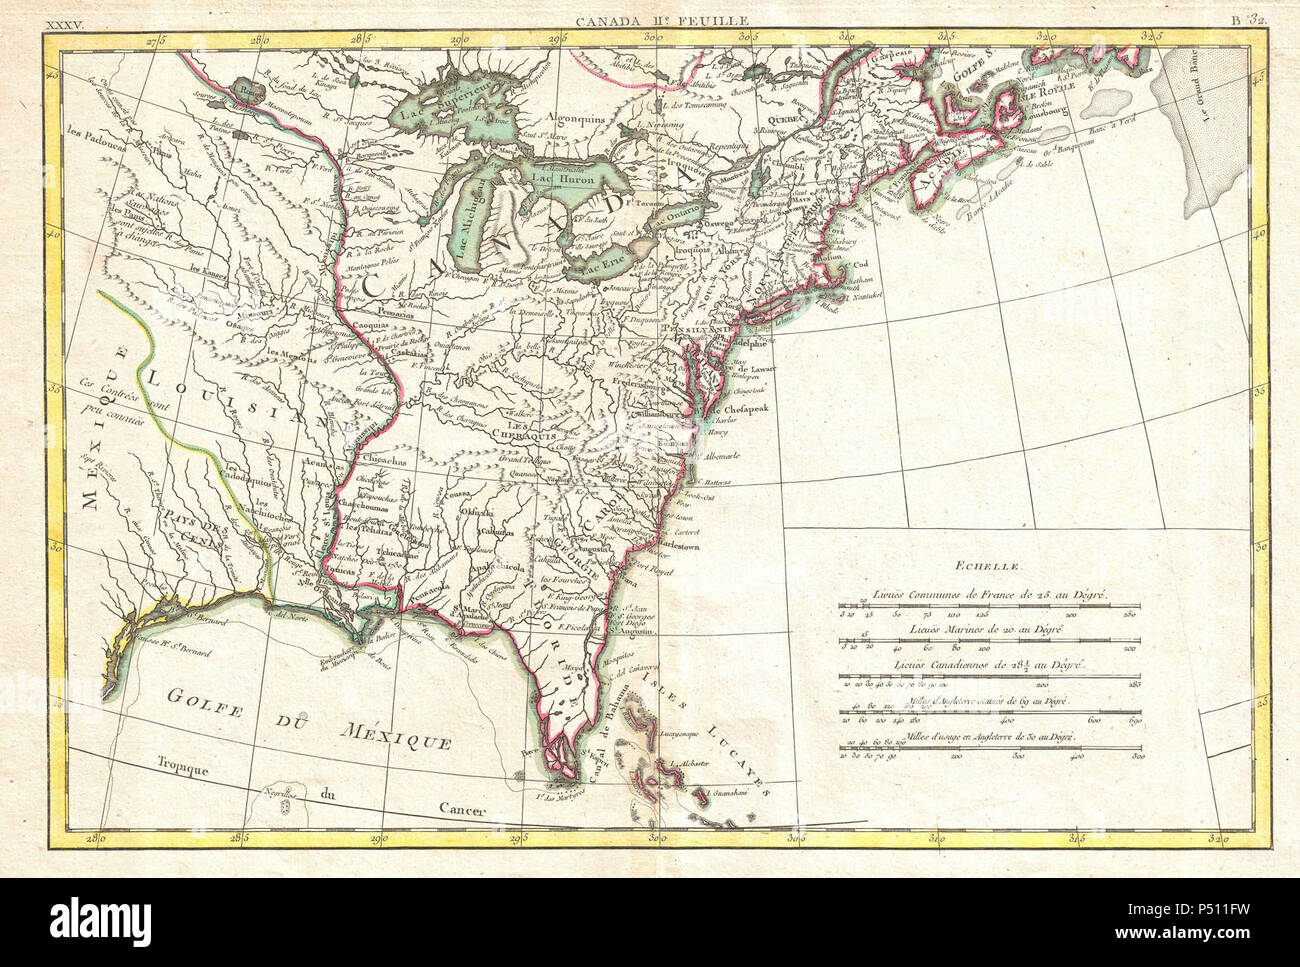 1776 Bonne carte de la Louisiane et les colonies britanniques en Amérique du Nord --NorthAmericaEast - Geographicus bonne-1776. Banque D'Images